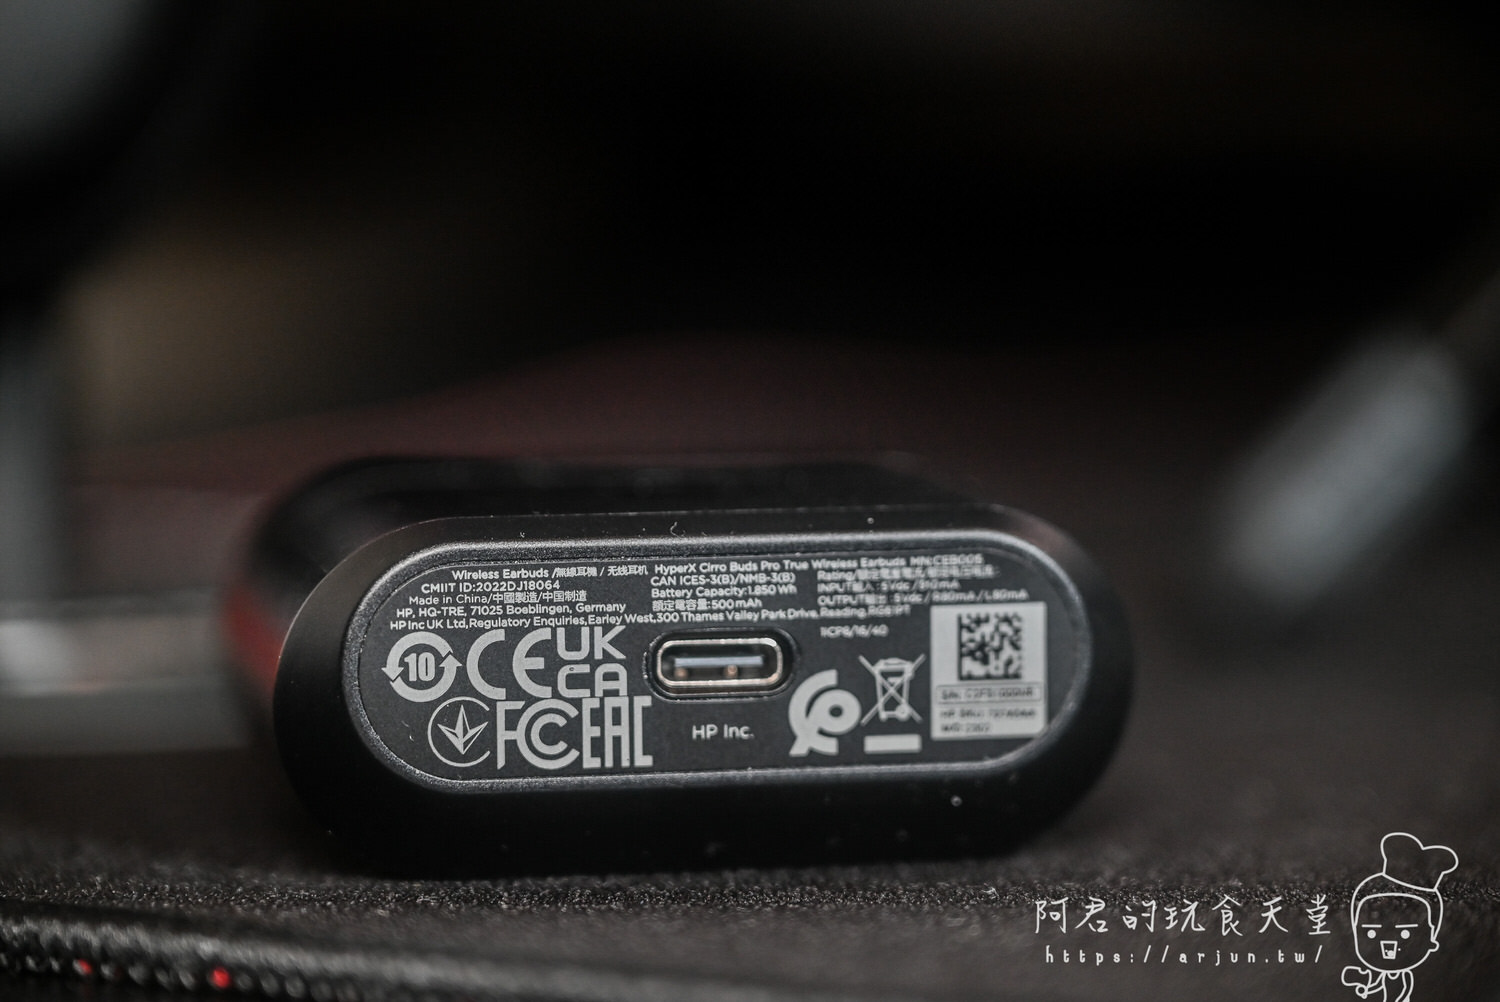 【開箱】HyperX Cirro Buds Pro｜複合式降噪加上長效電力，融入玩家日常生活的真無線入耳式藍芽耳機